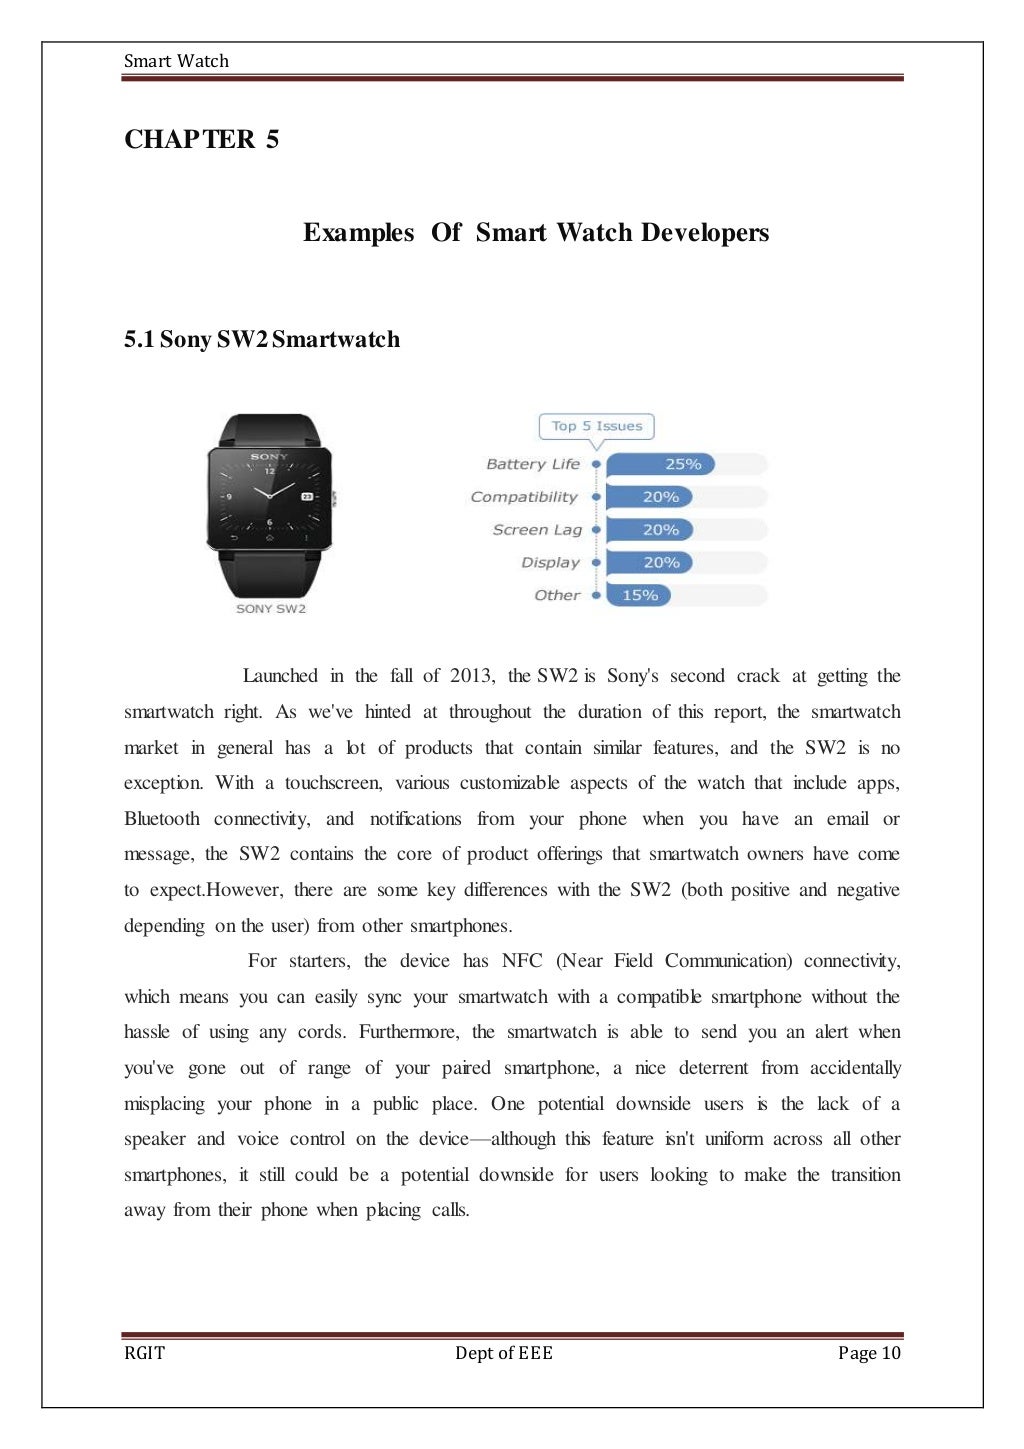 smart watch review essay